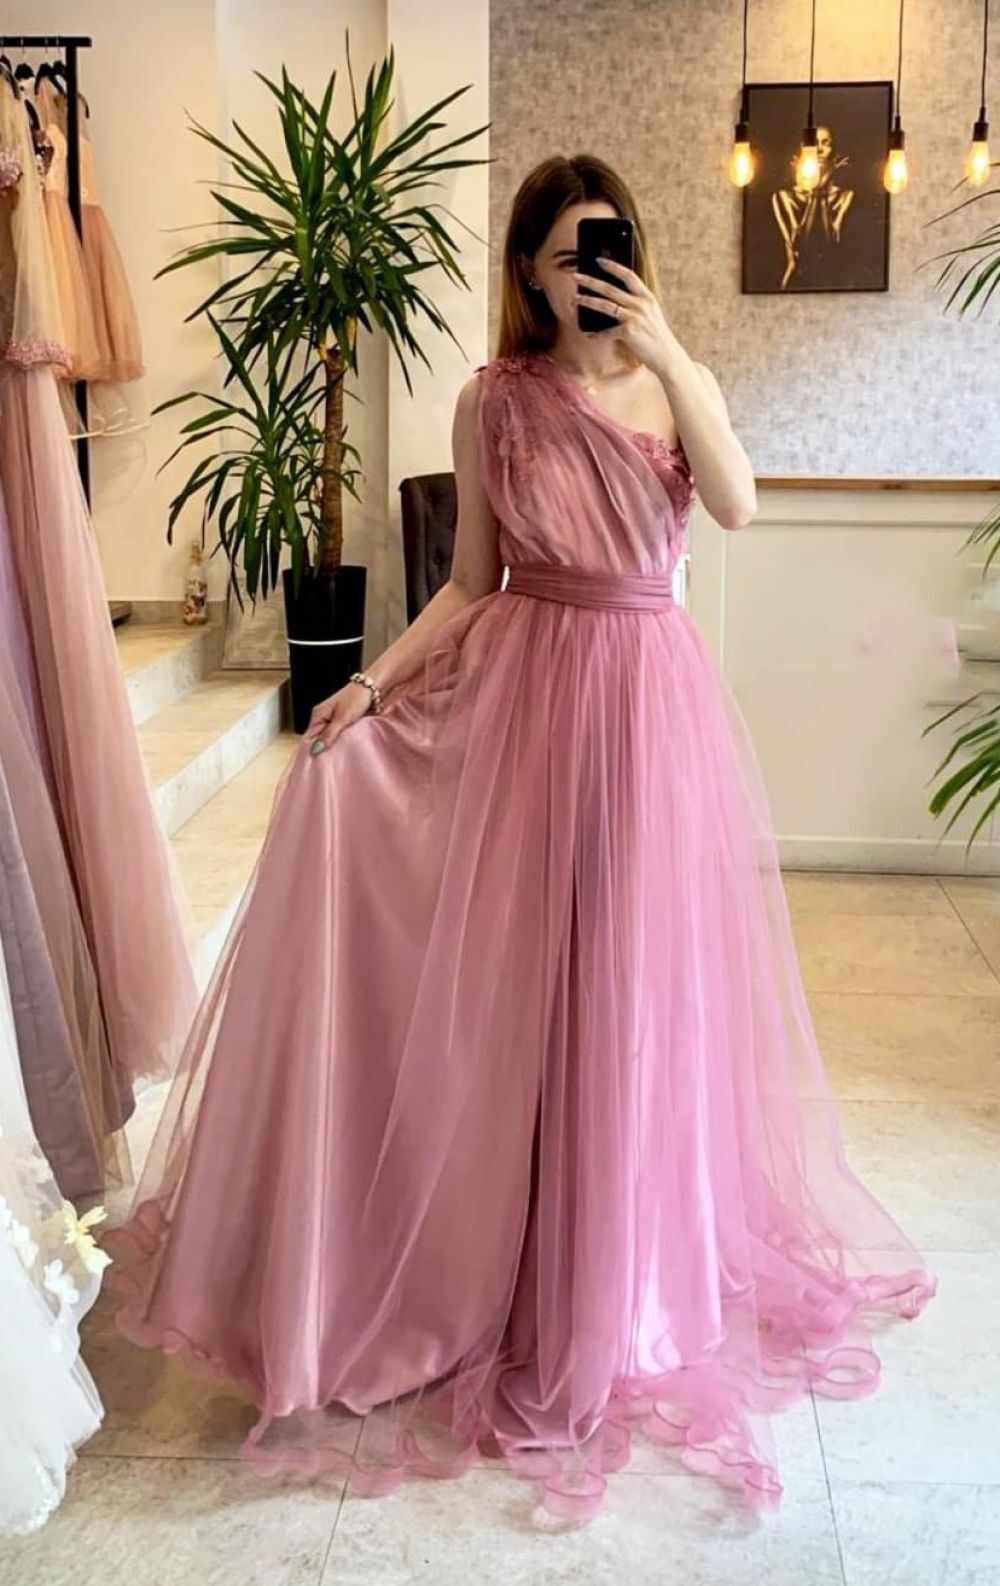 Rochie lunga din tull roz cu aplicatie de flori 3D in partea superioara